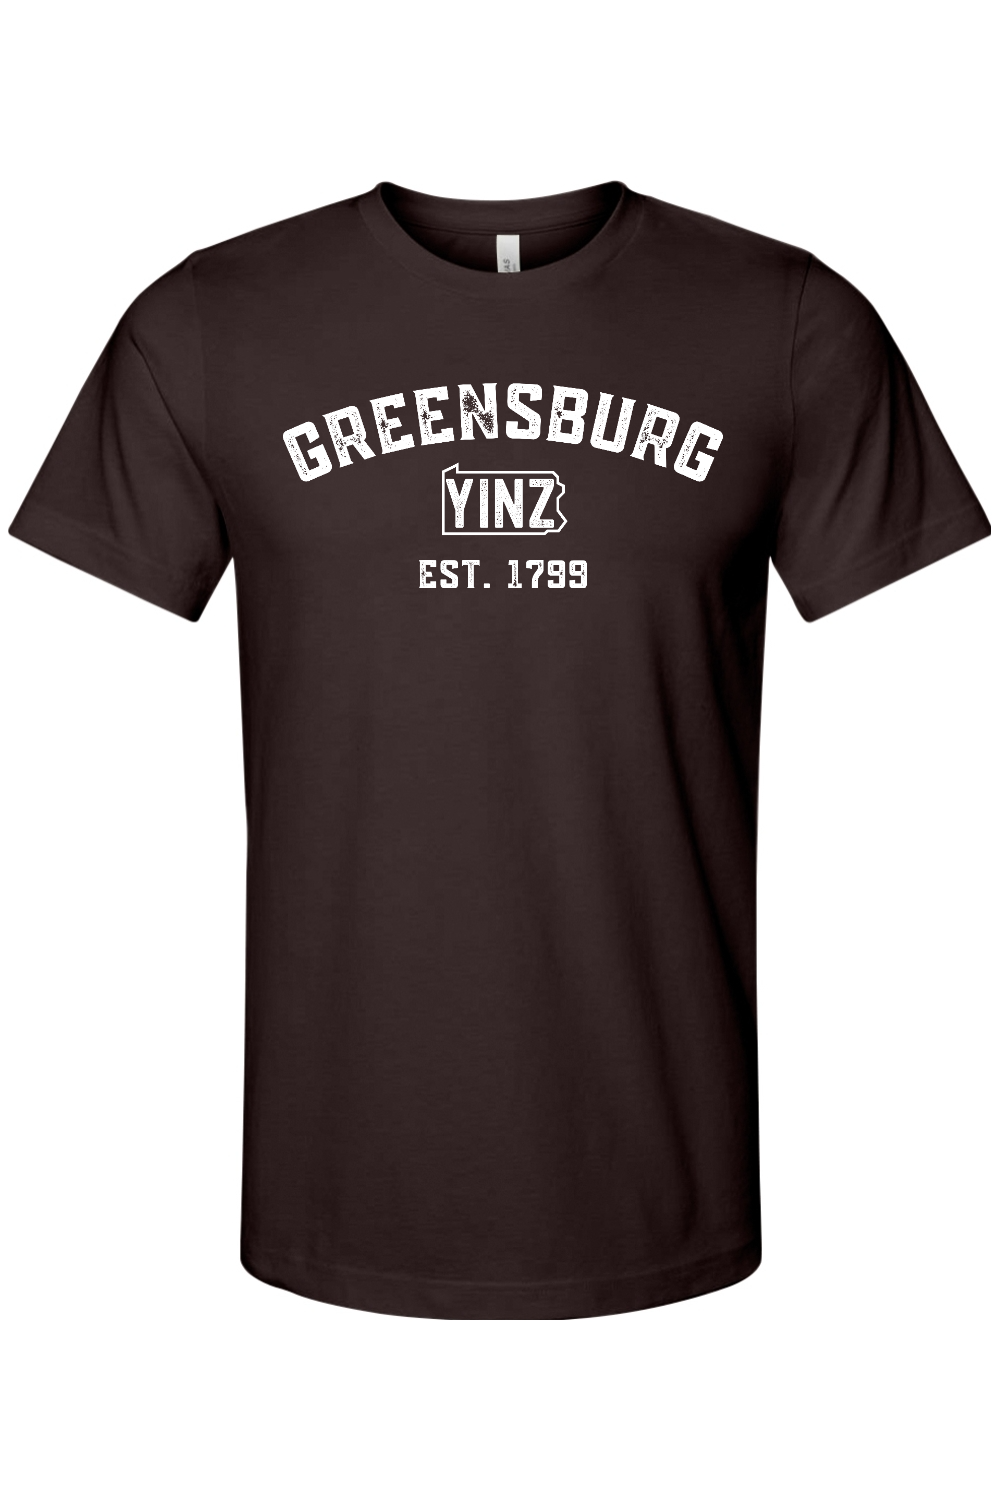 Greensburg Yinzylvania - Yinzylvania